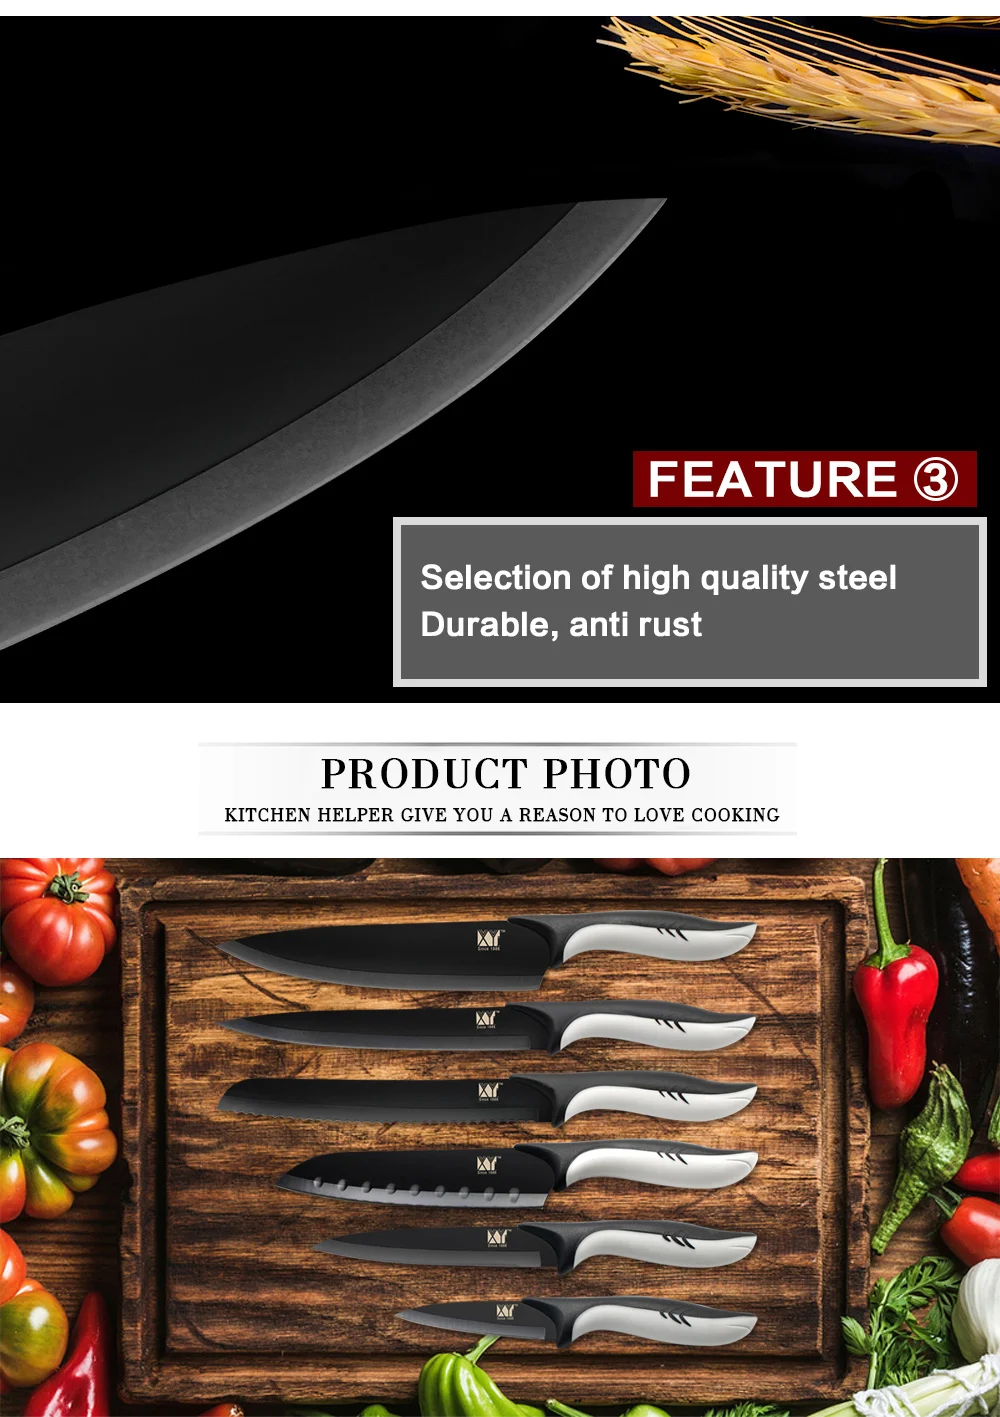 XYj кухонные ножи из нержавеющей стали держатель ножей замороженное мясо резак для очистки овощей утилита Santoku шеф-повара нож для нарезки хлеба инструменты для приготовления пищи